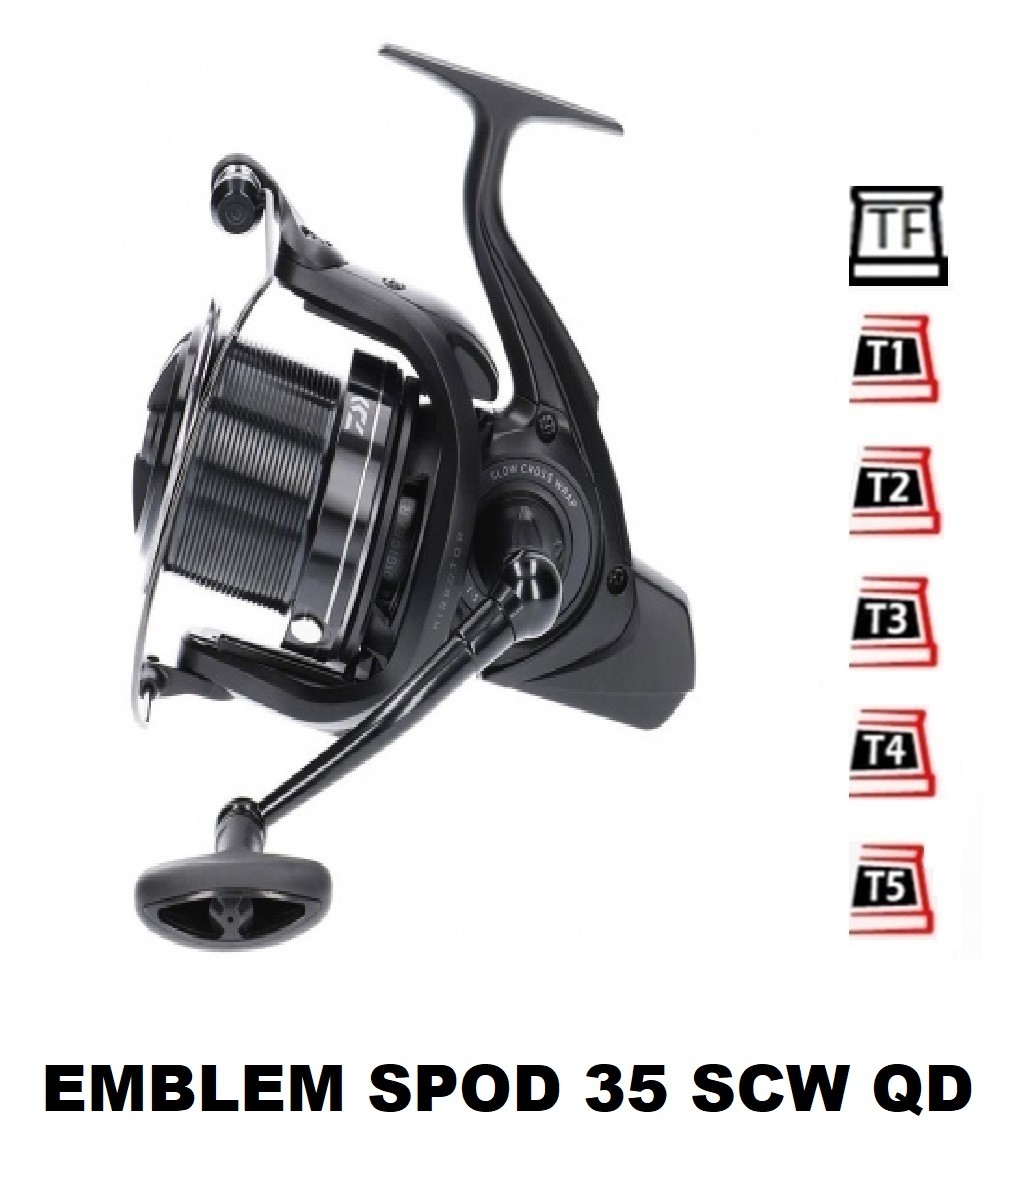 Bobine 19 Emblem Spod 35 SCW QD [2020]